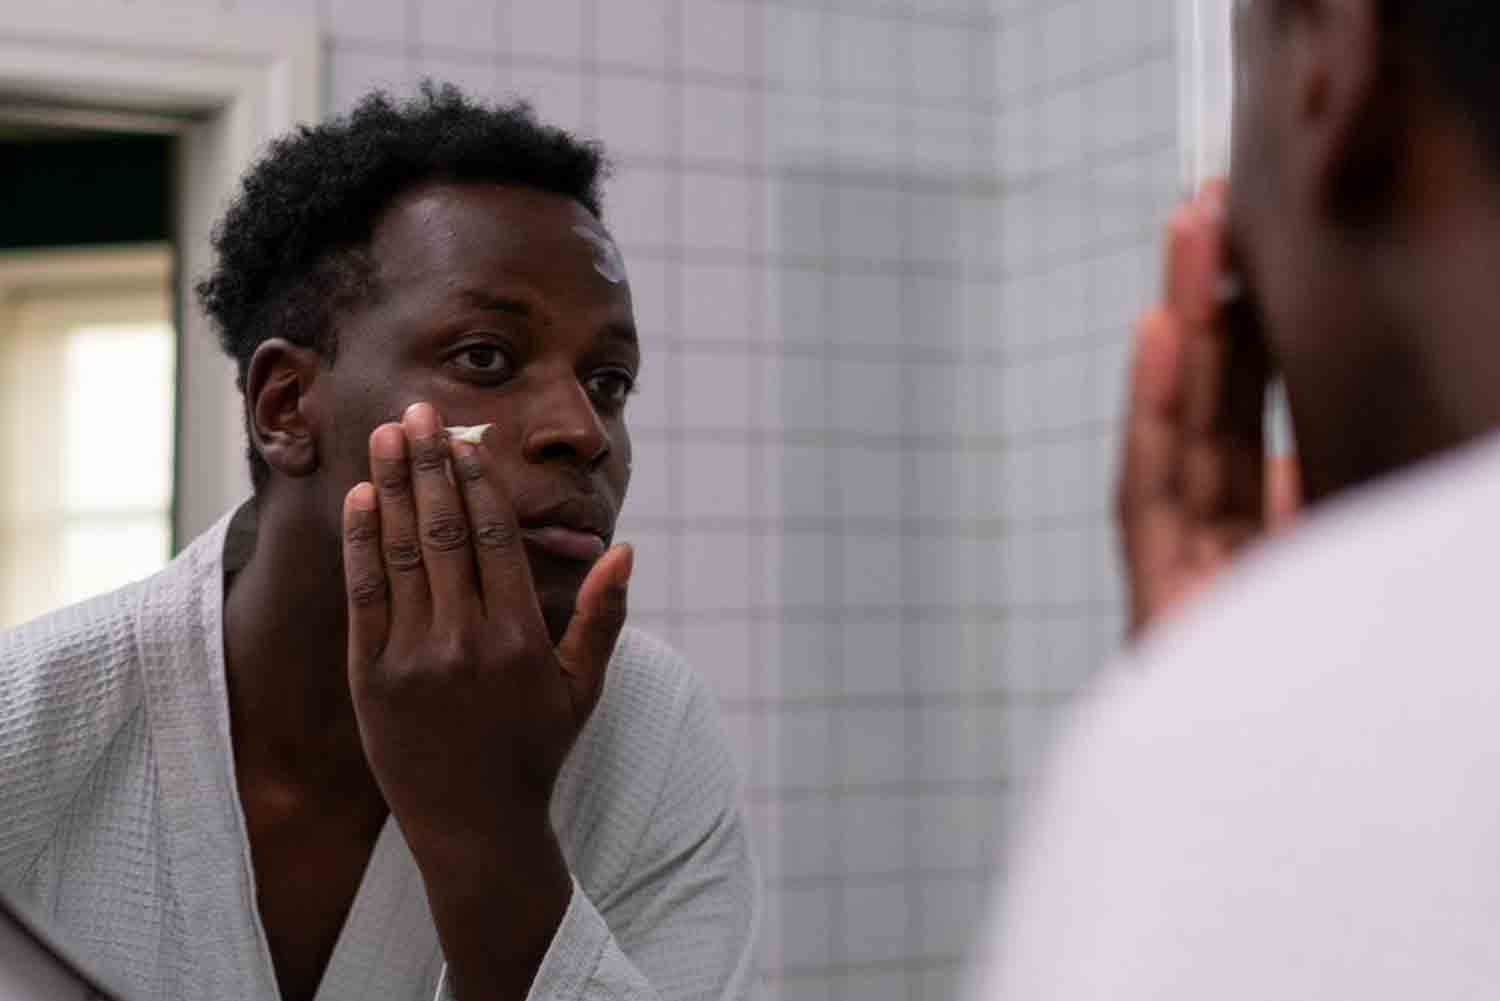 man applying moisturizer in mirror